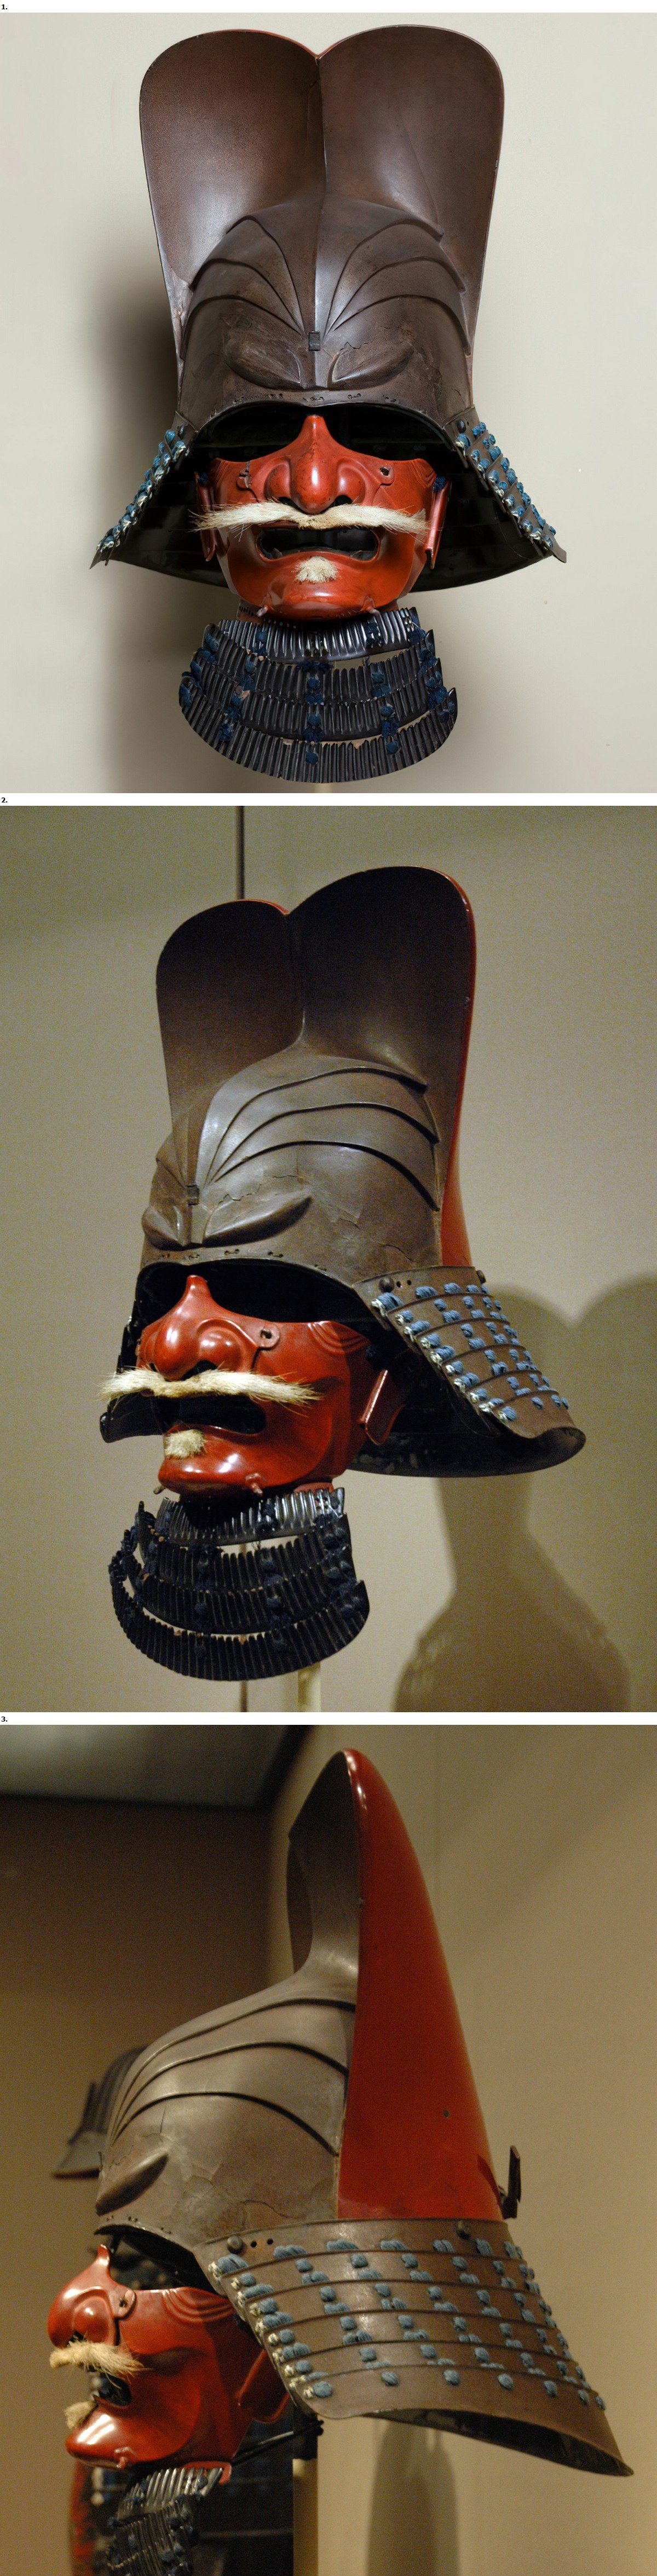 Casque de samouraï avec demi-masque, env. 1615–1650. Japon. Période Edo (1615–1868). Fer, cuir, papier laminé, laque et textile. Musée d'art asiatique de San Francisco